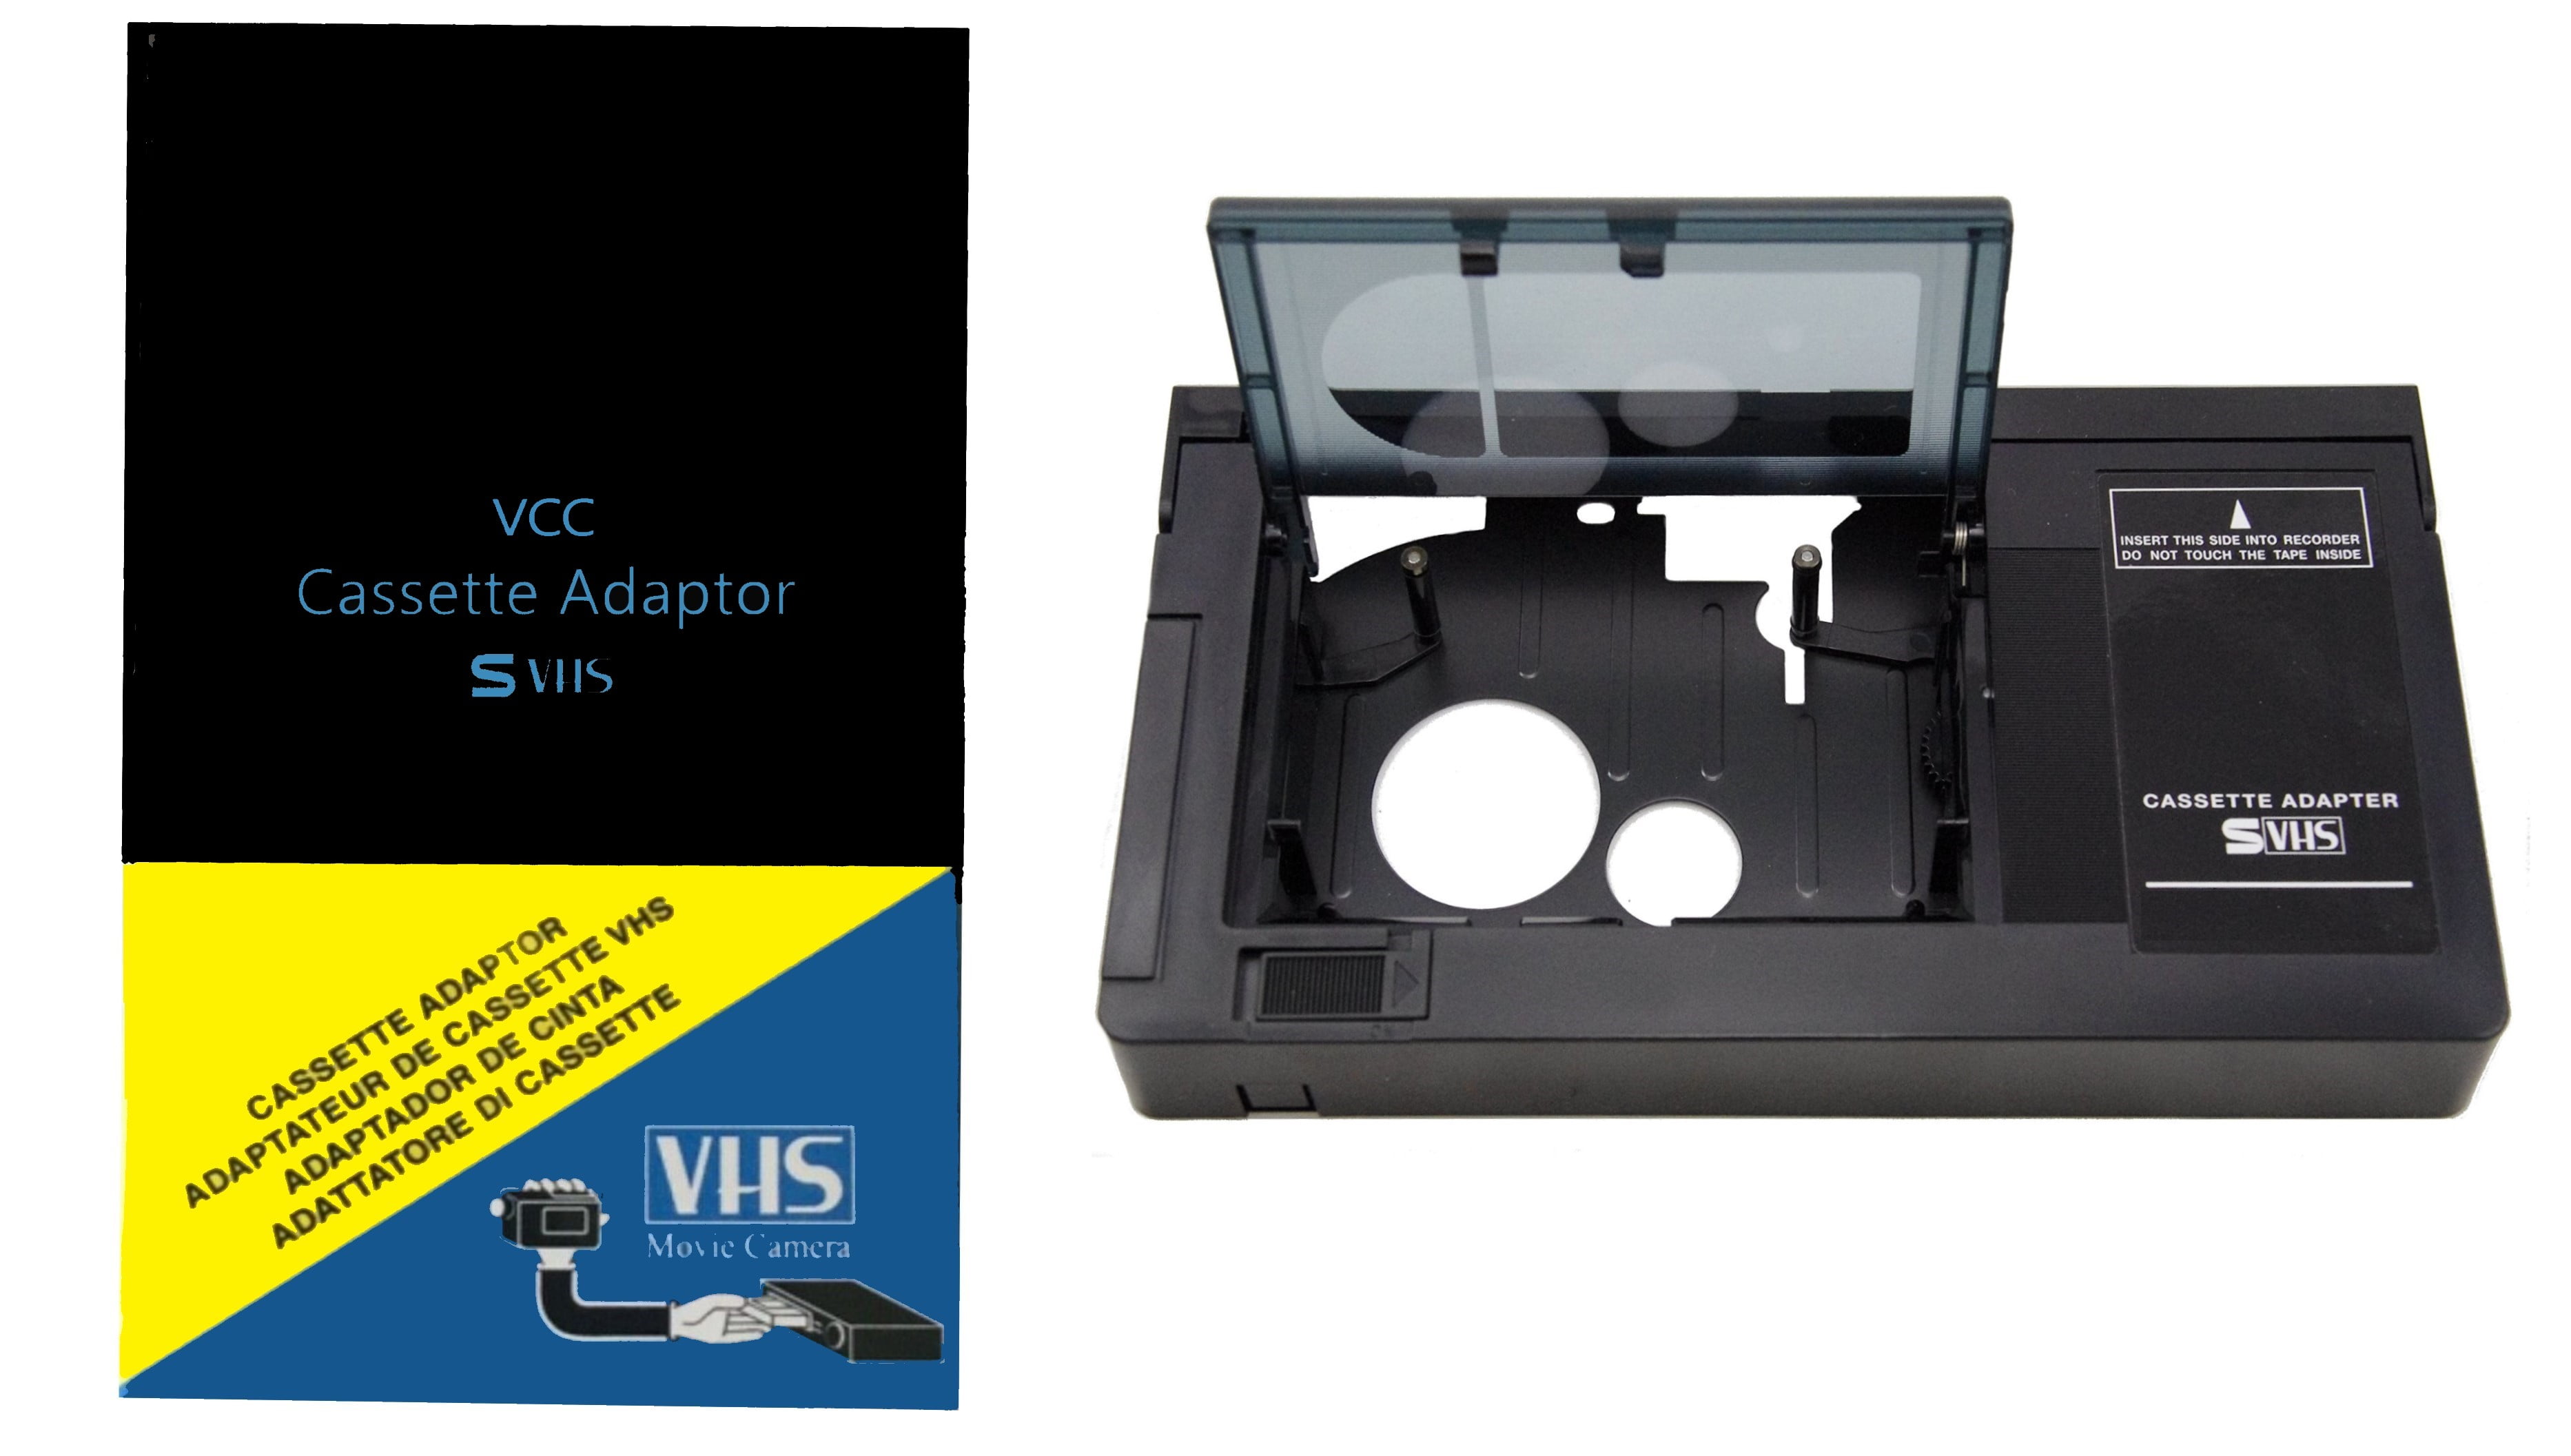 Lecteur VHS Lecteur cassette vidéo JVC et lecteur DVD fonctionnel, hi-fi  Stéréo avec télécommande d'origine -  Canada